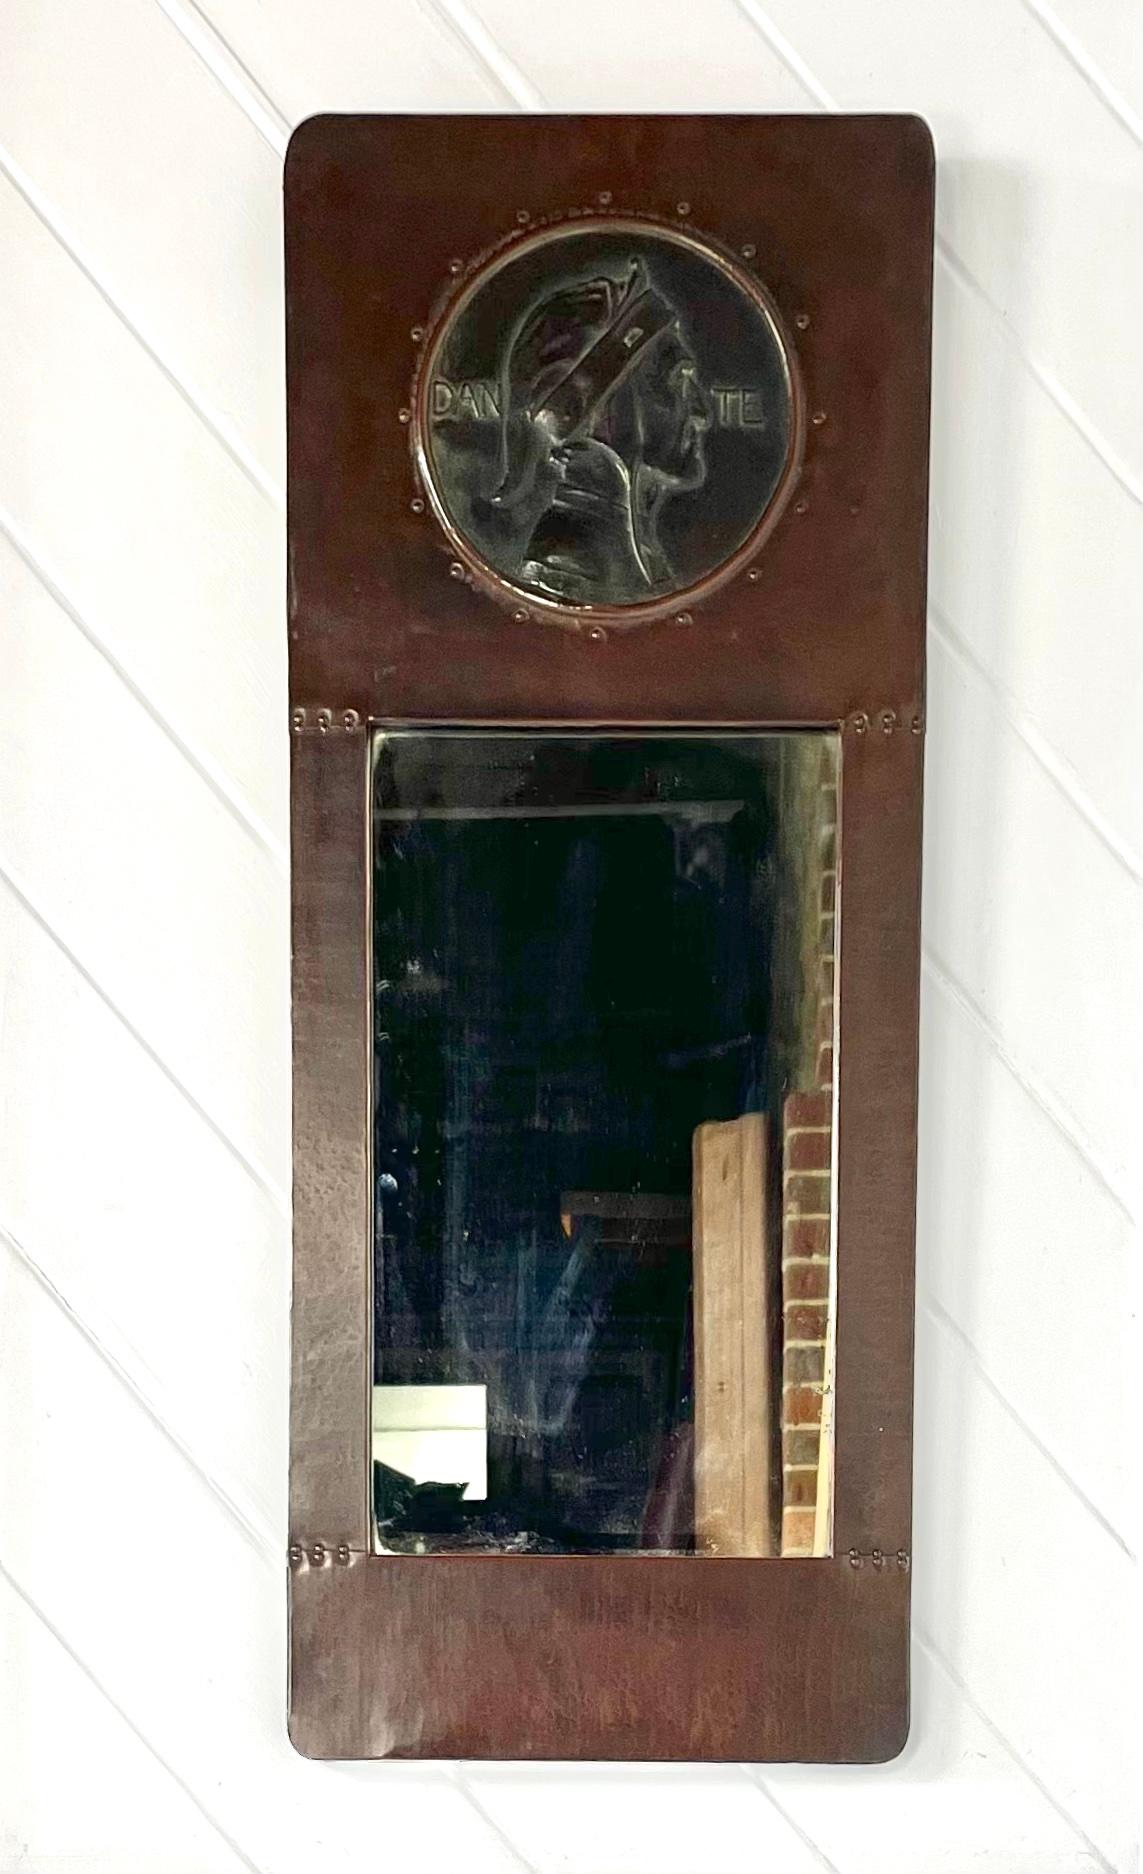 Miroir encadré en cuivre Arts & Crafts
avec un rondeau en bronze encastré représentant 